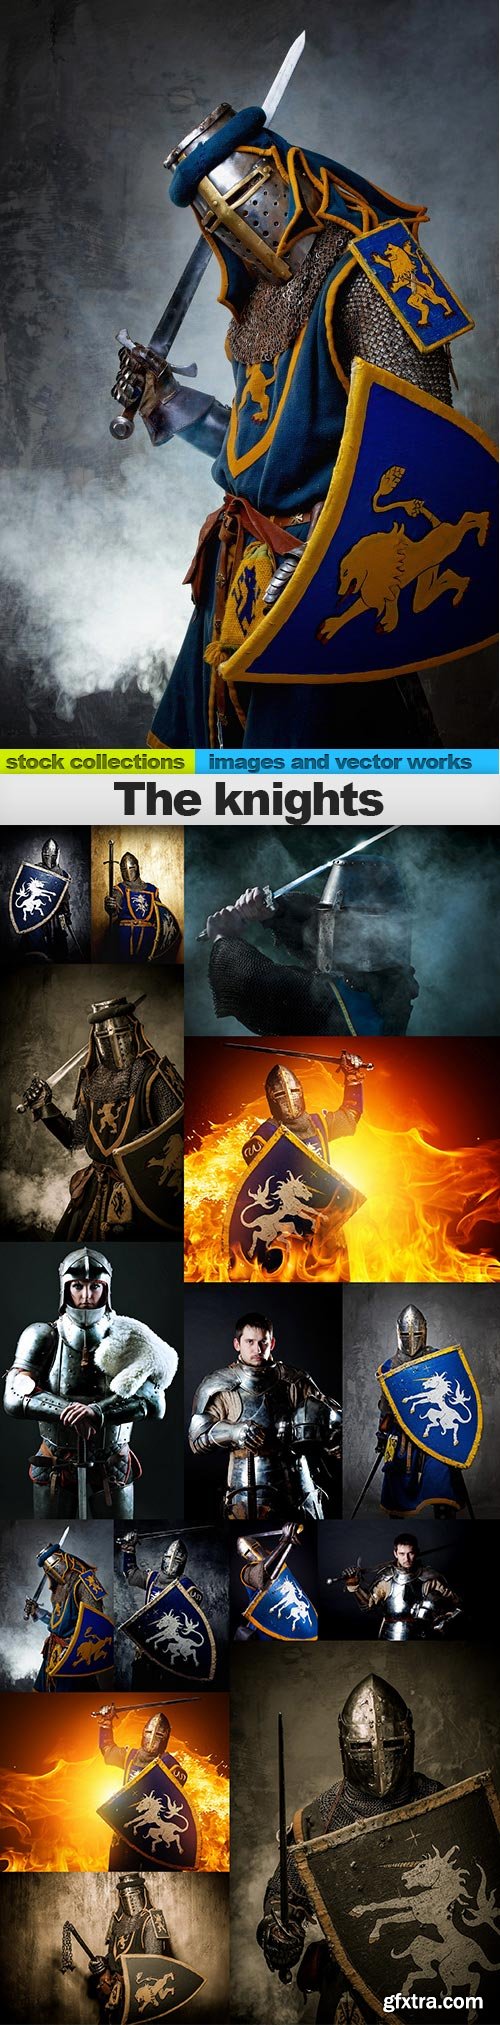 The knights, 15 x UHQ JPEG